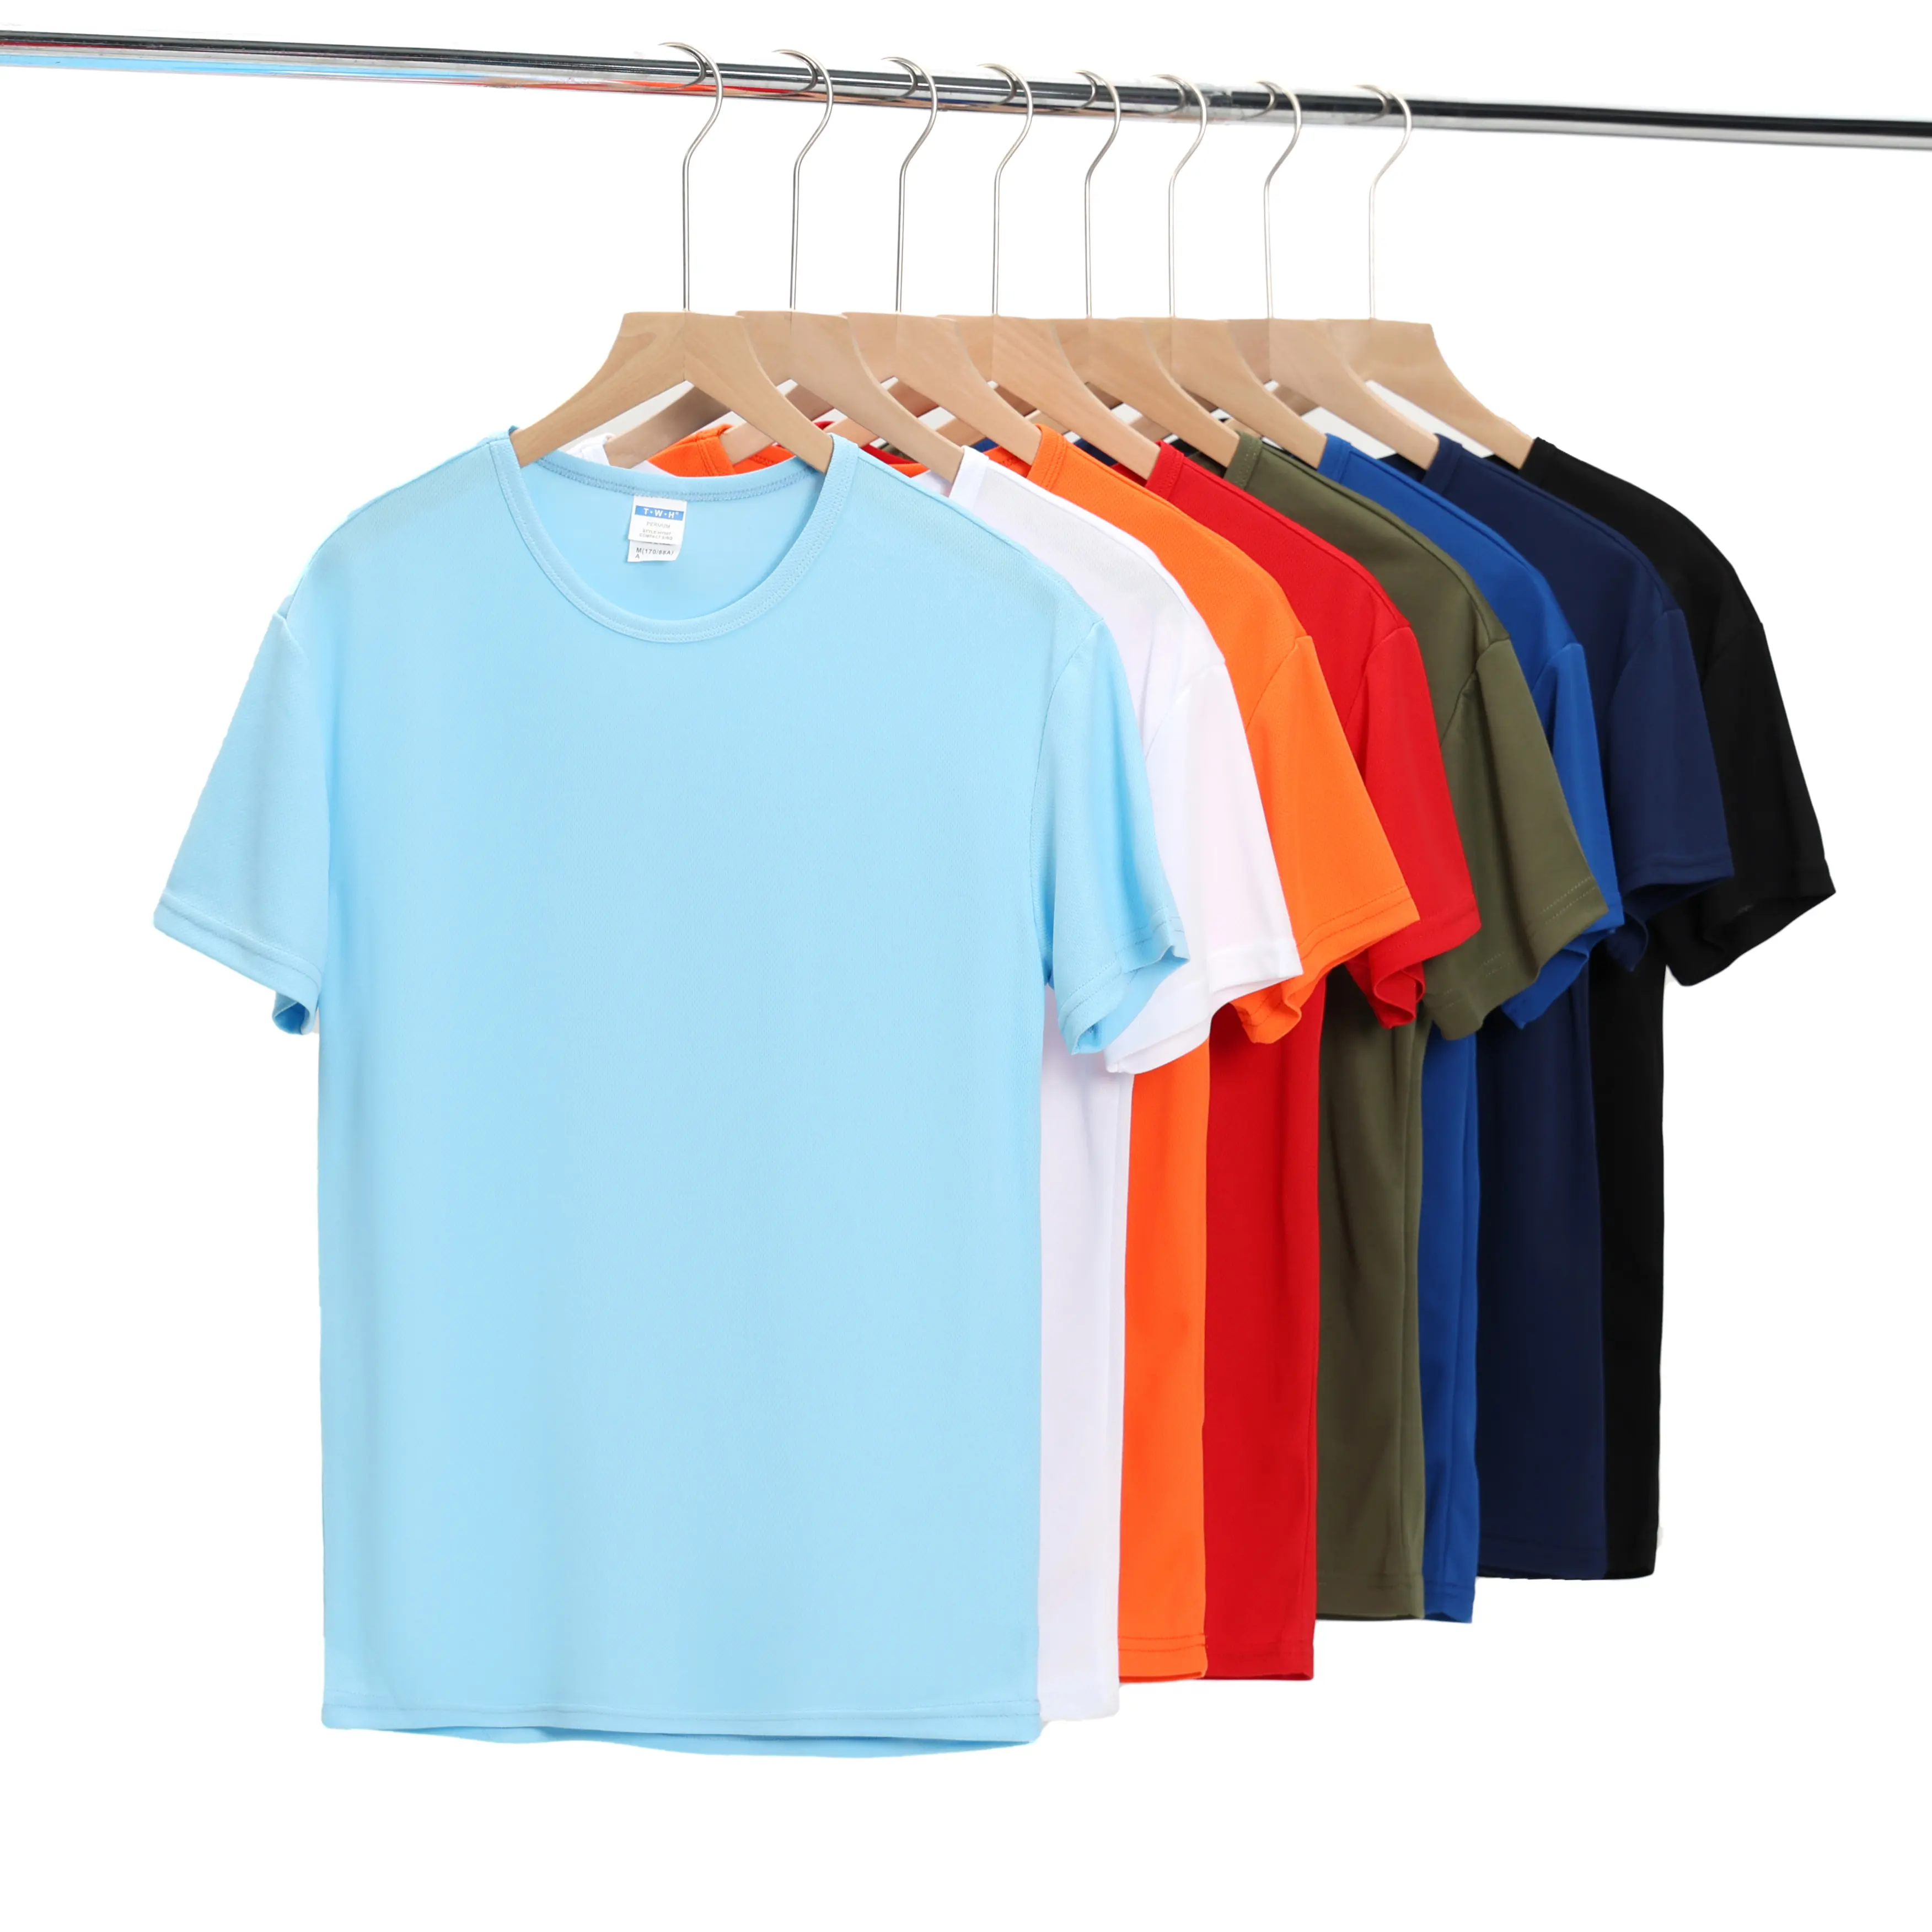 Personnalisé séchage rapide Polyester maille sport course O-cou sec t-shirt imprimé LOGO